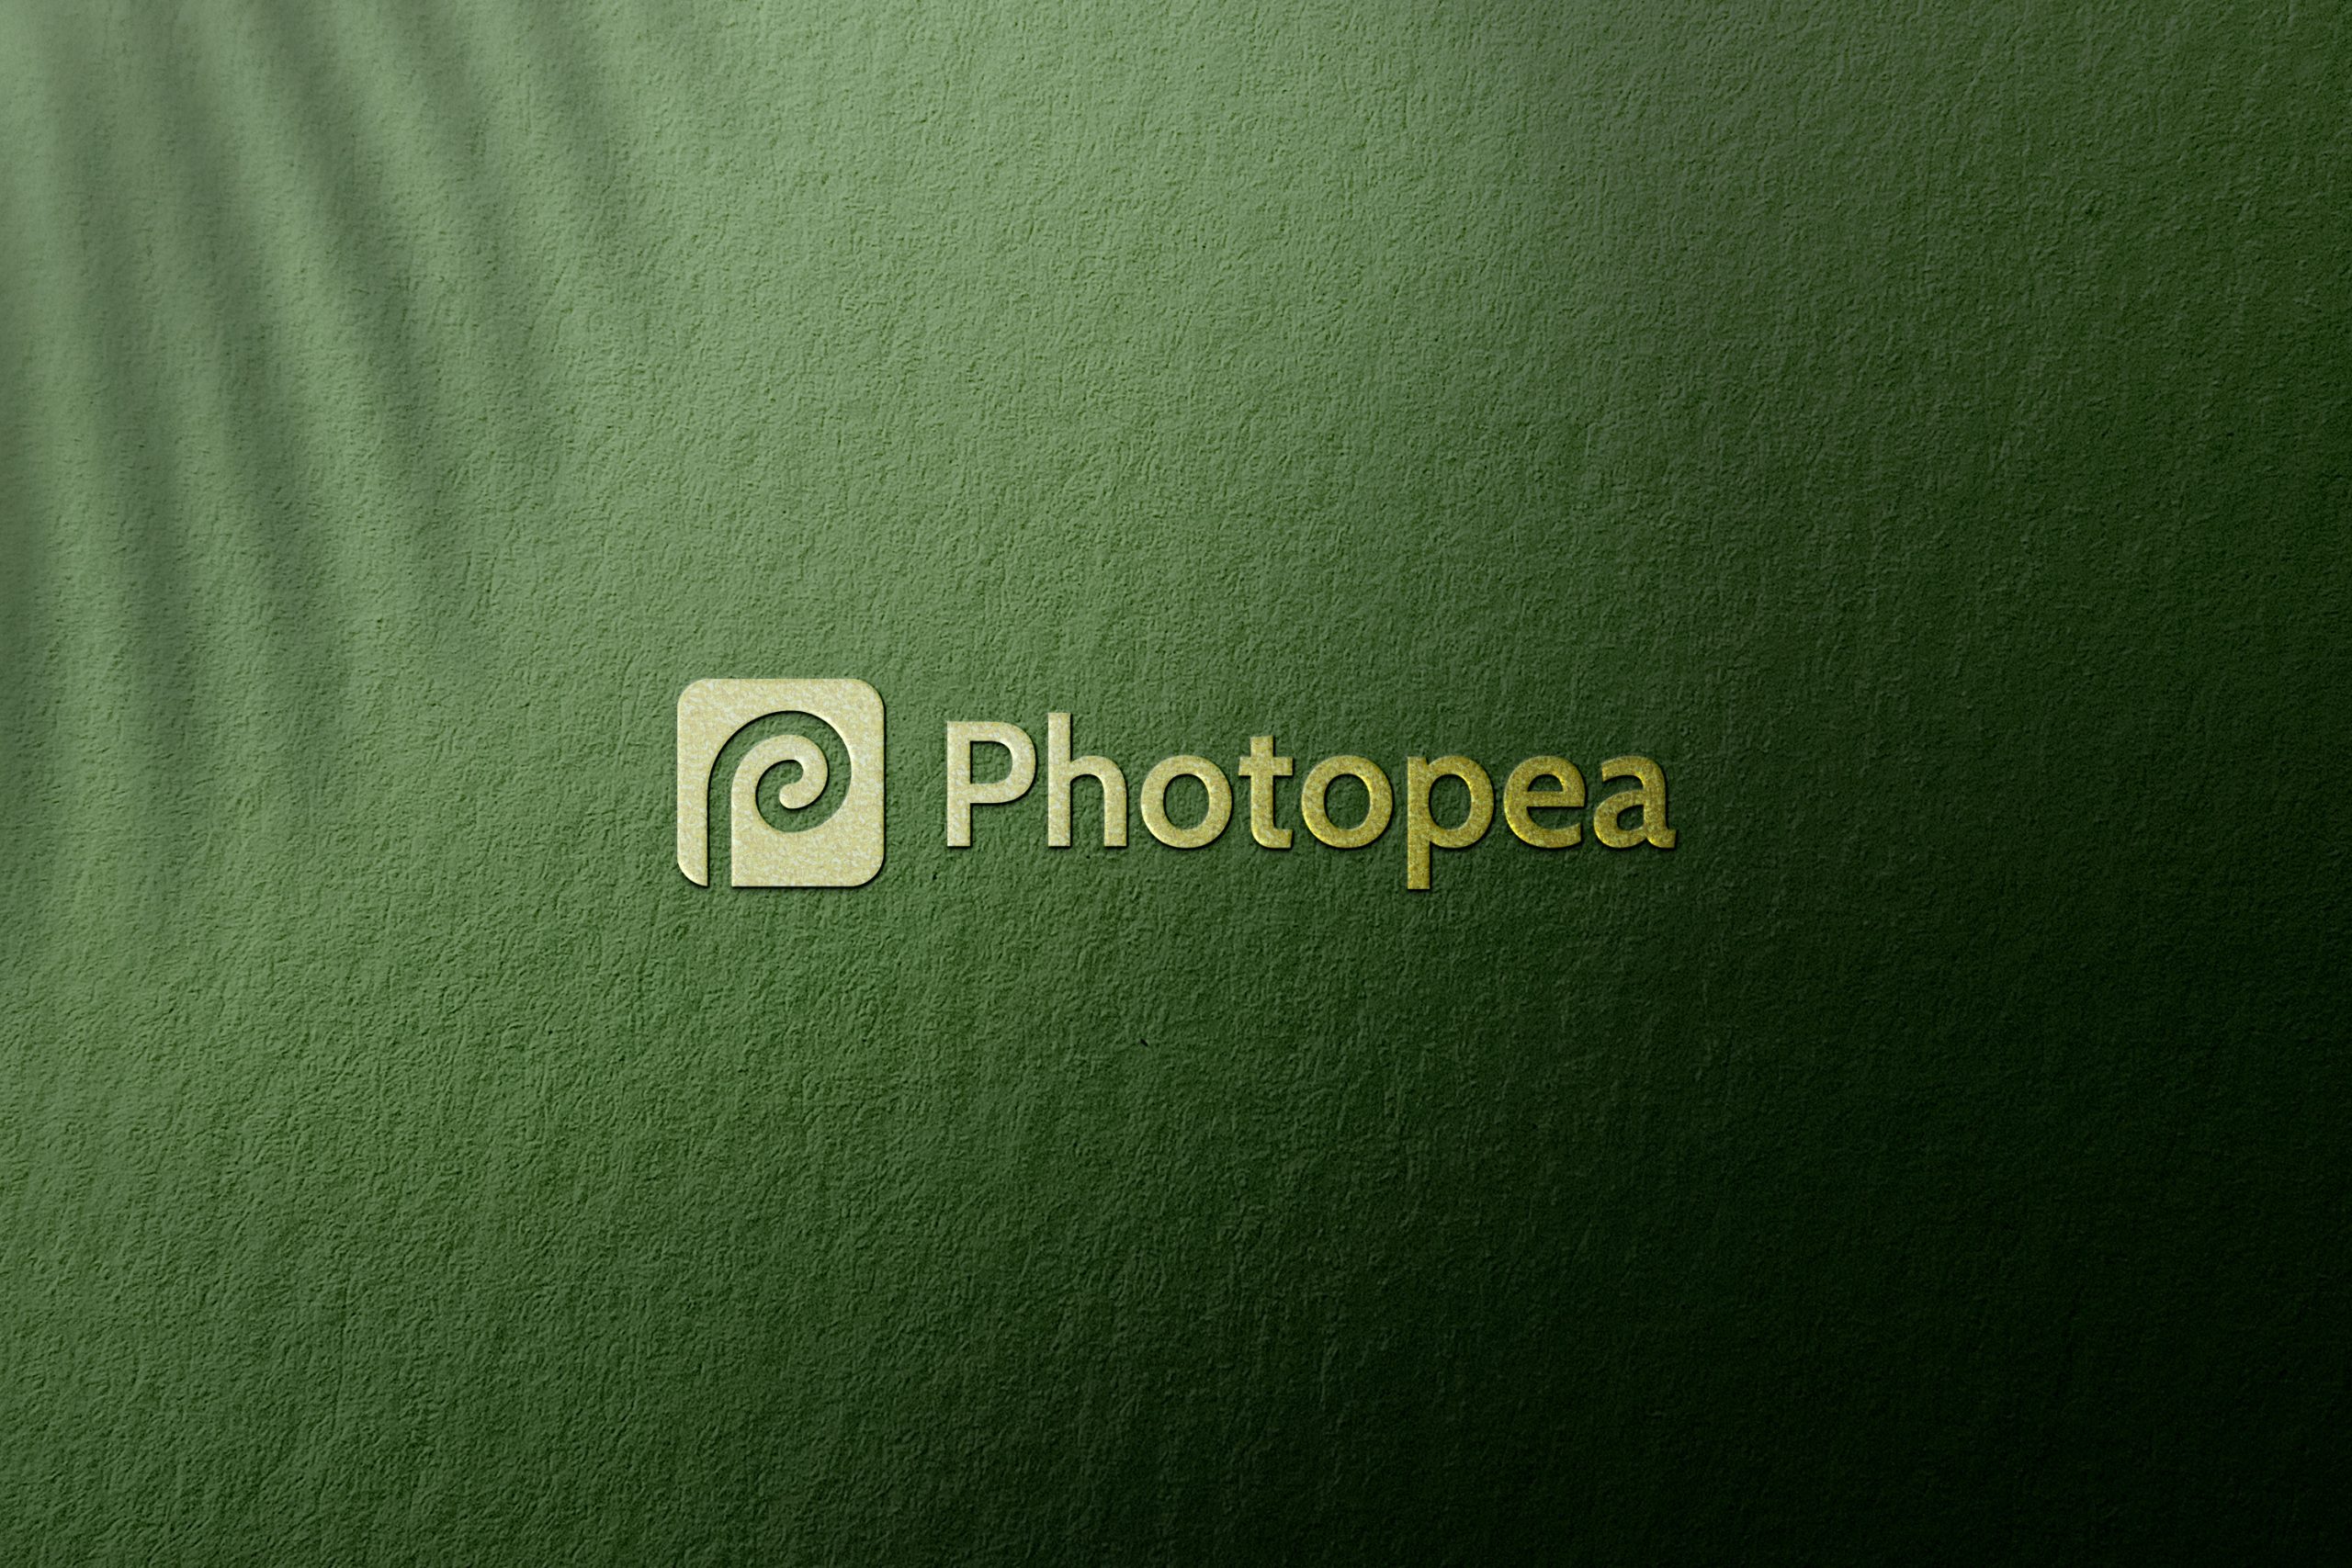 Photopea Logo Mockup Textured Luxury Gold